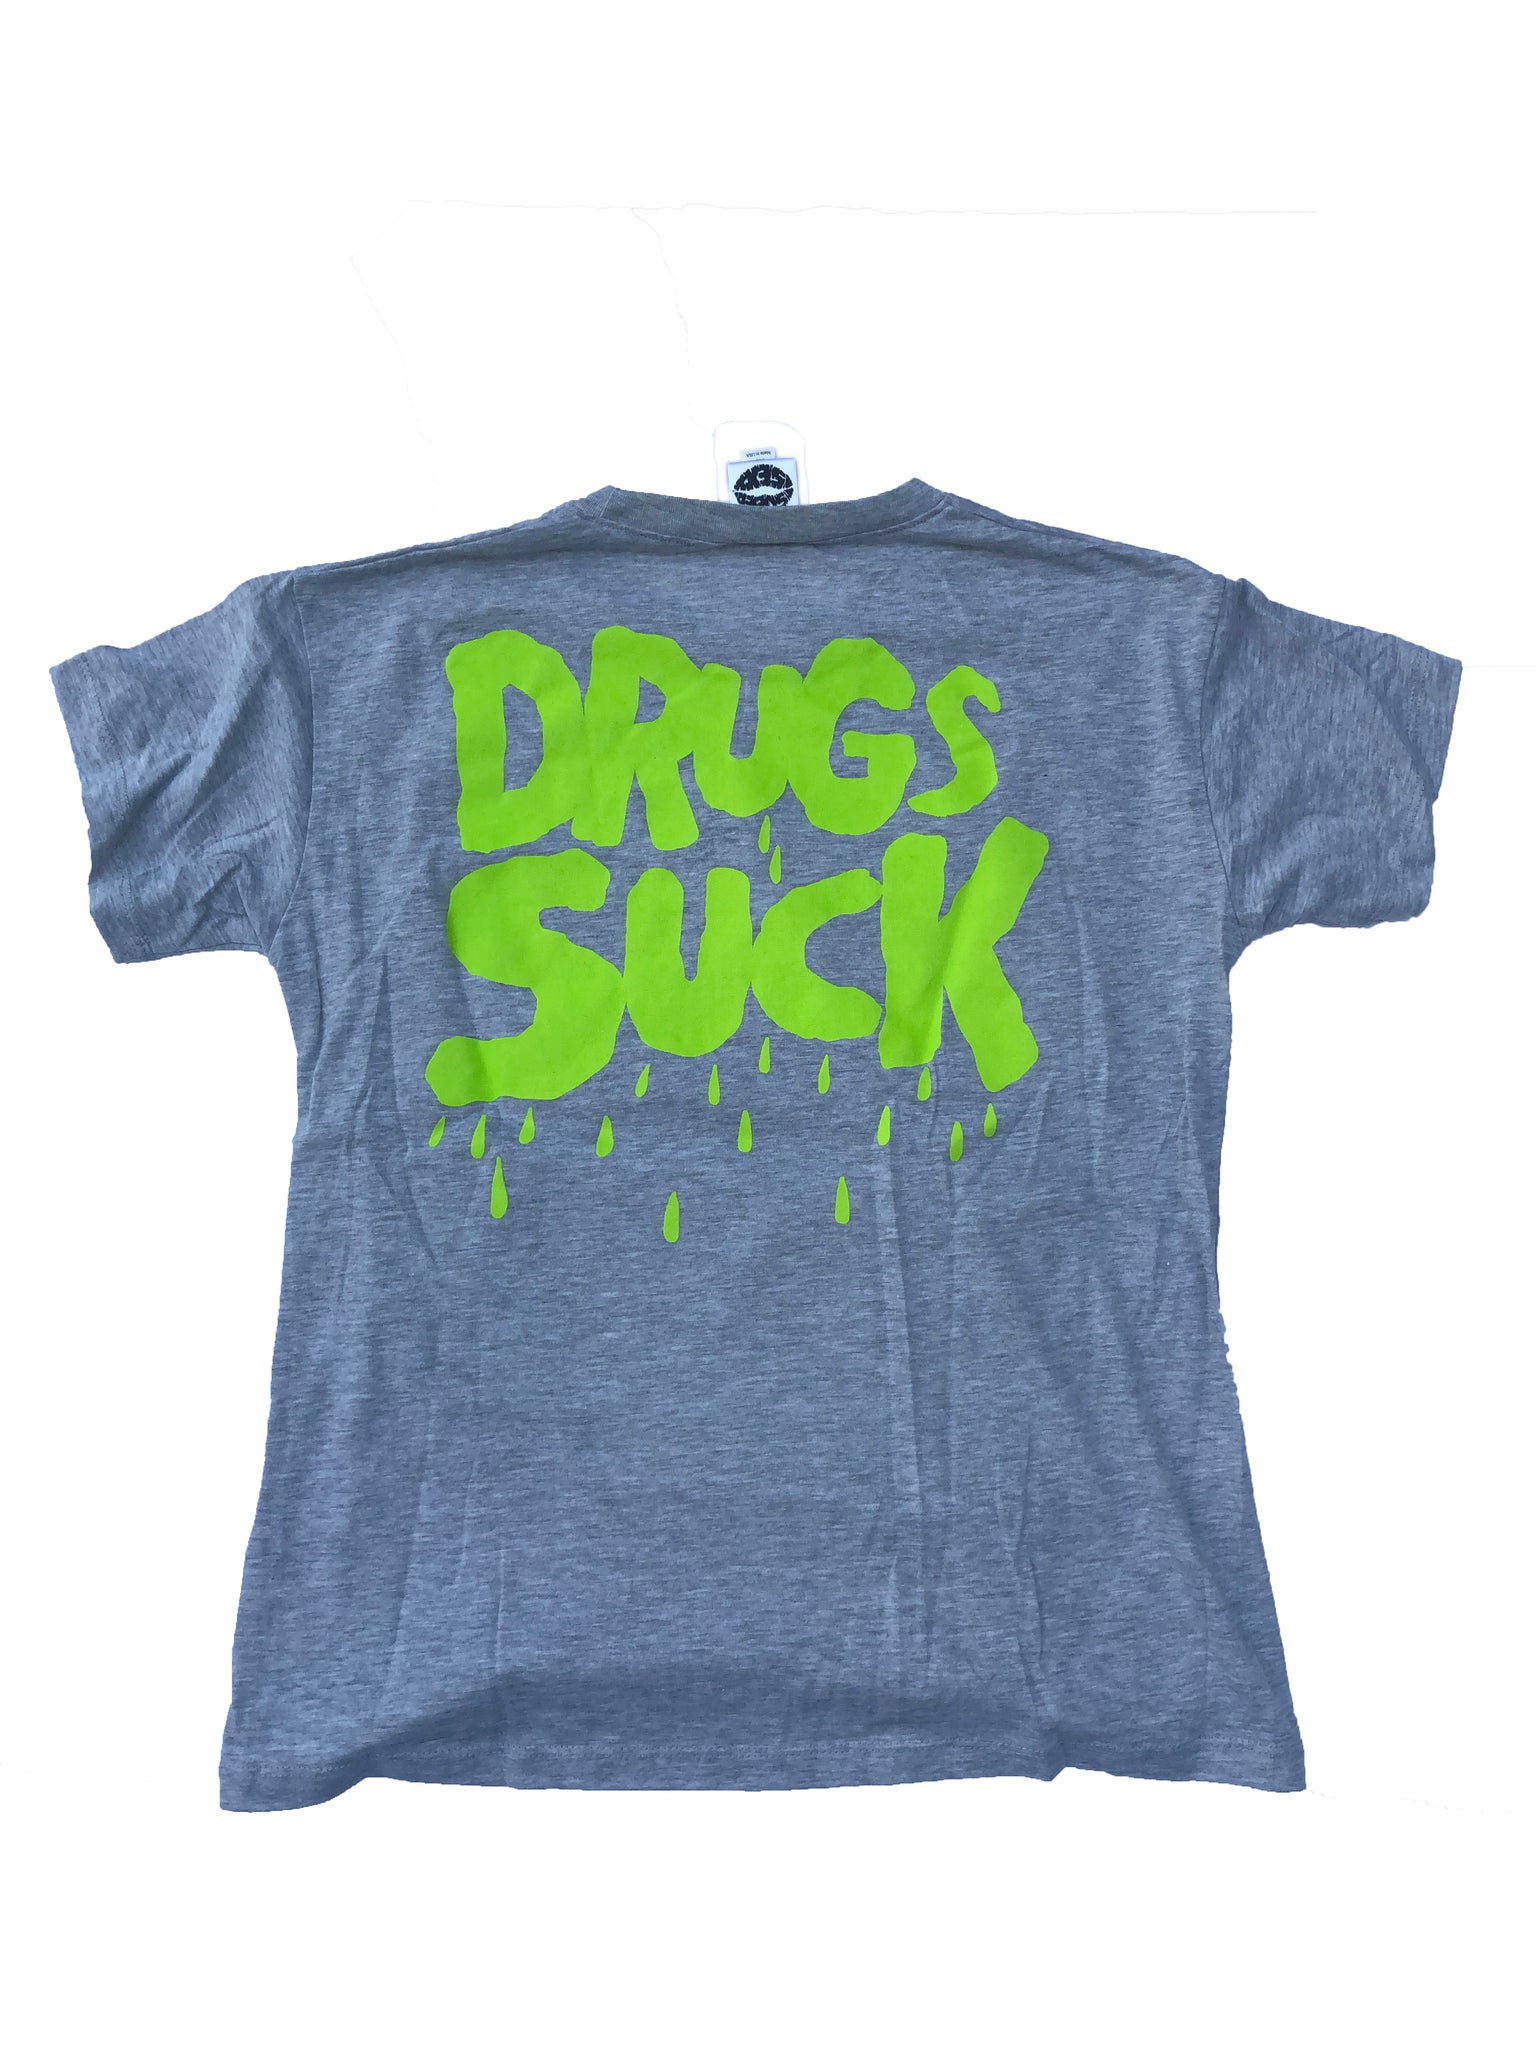 Drugs Suck Gray T-Shirt